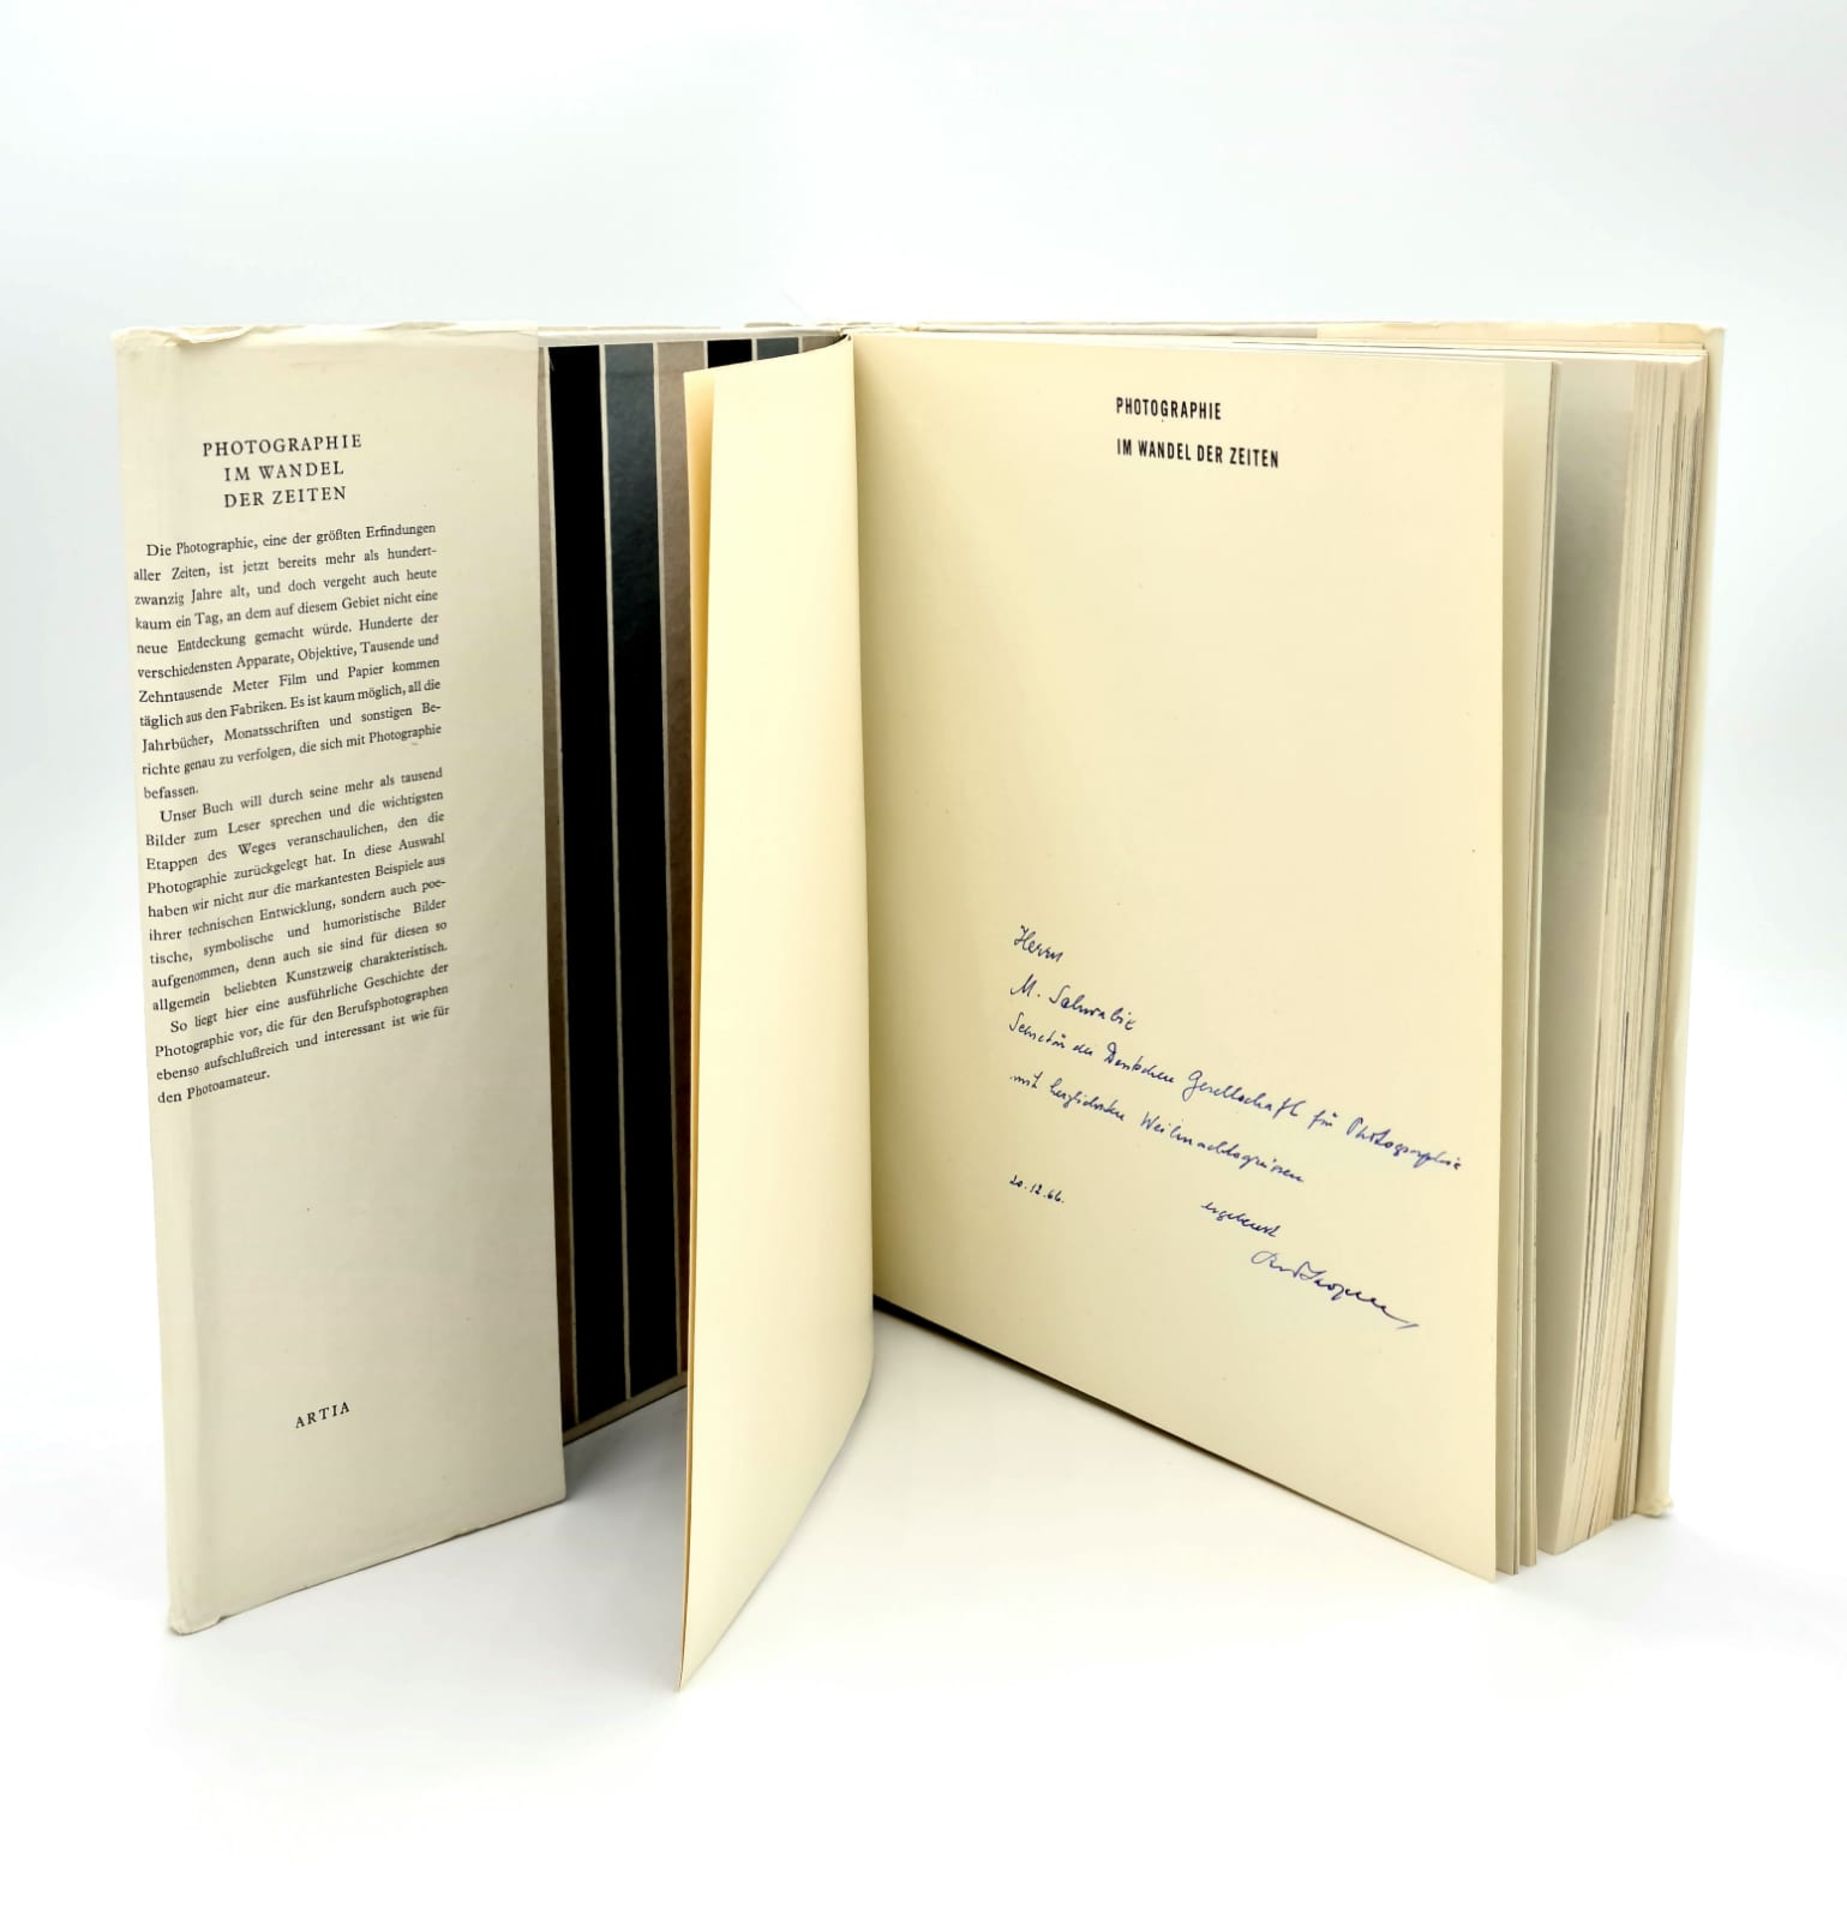 Rudolf Skopec, Photographie im Wandel der Zeit, Handsigniert, 1964 Artia Praha Verlag, - Image 2 of 3